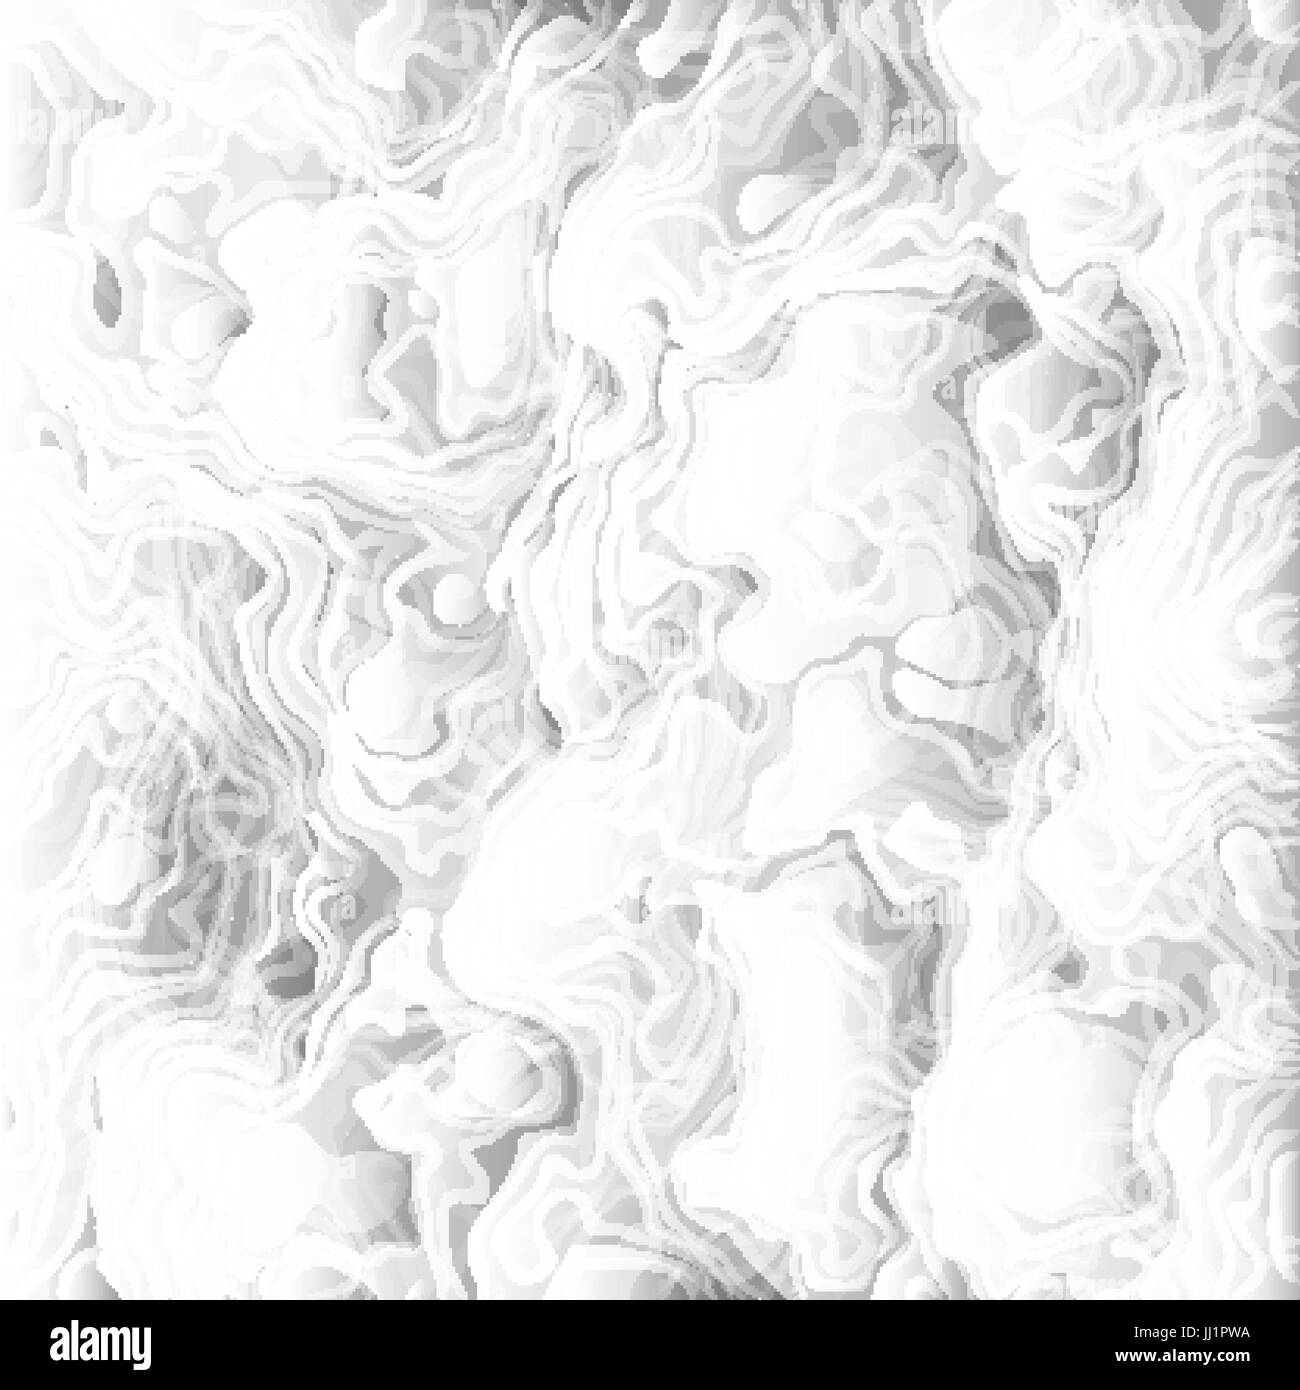 Wolken Undulatus Asperatus Vektor Hintergrund. Dicker Rauch Kulisse zu ersticken. Wolken von Asche und Dampf aus einem ausbrechenden Vulkan Textur Abbildung. Stock Vektor